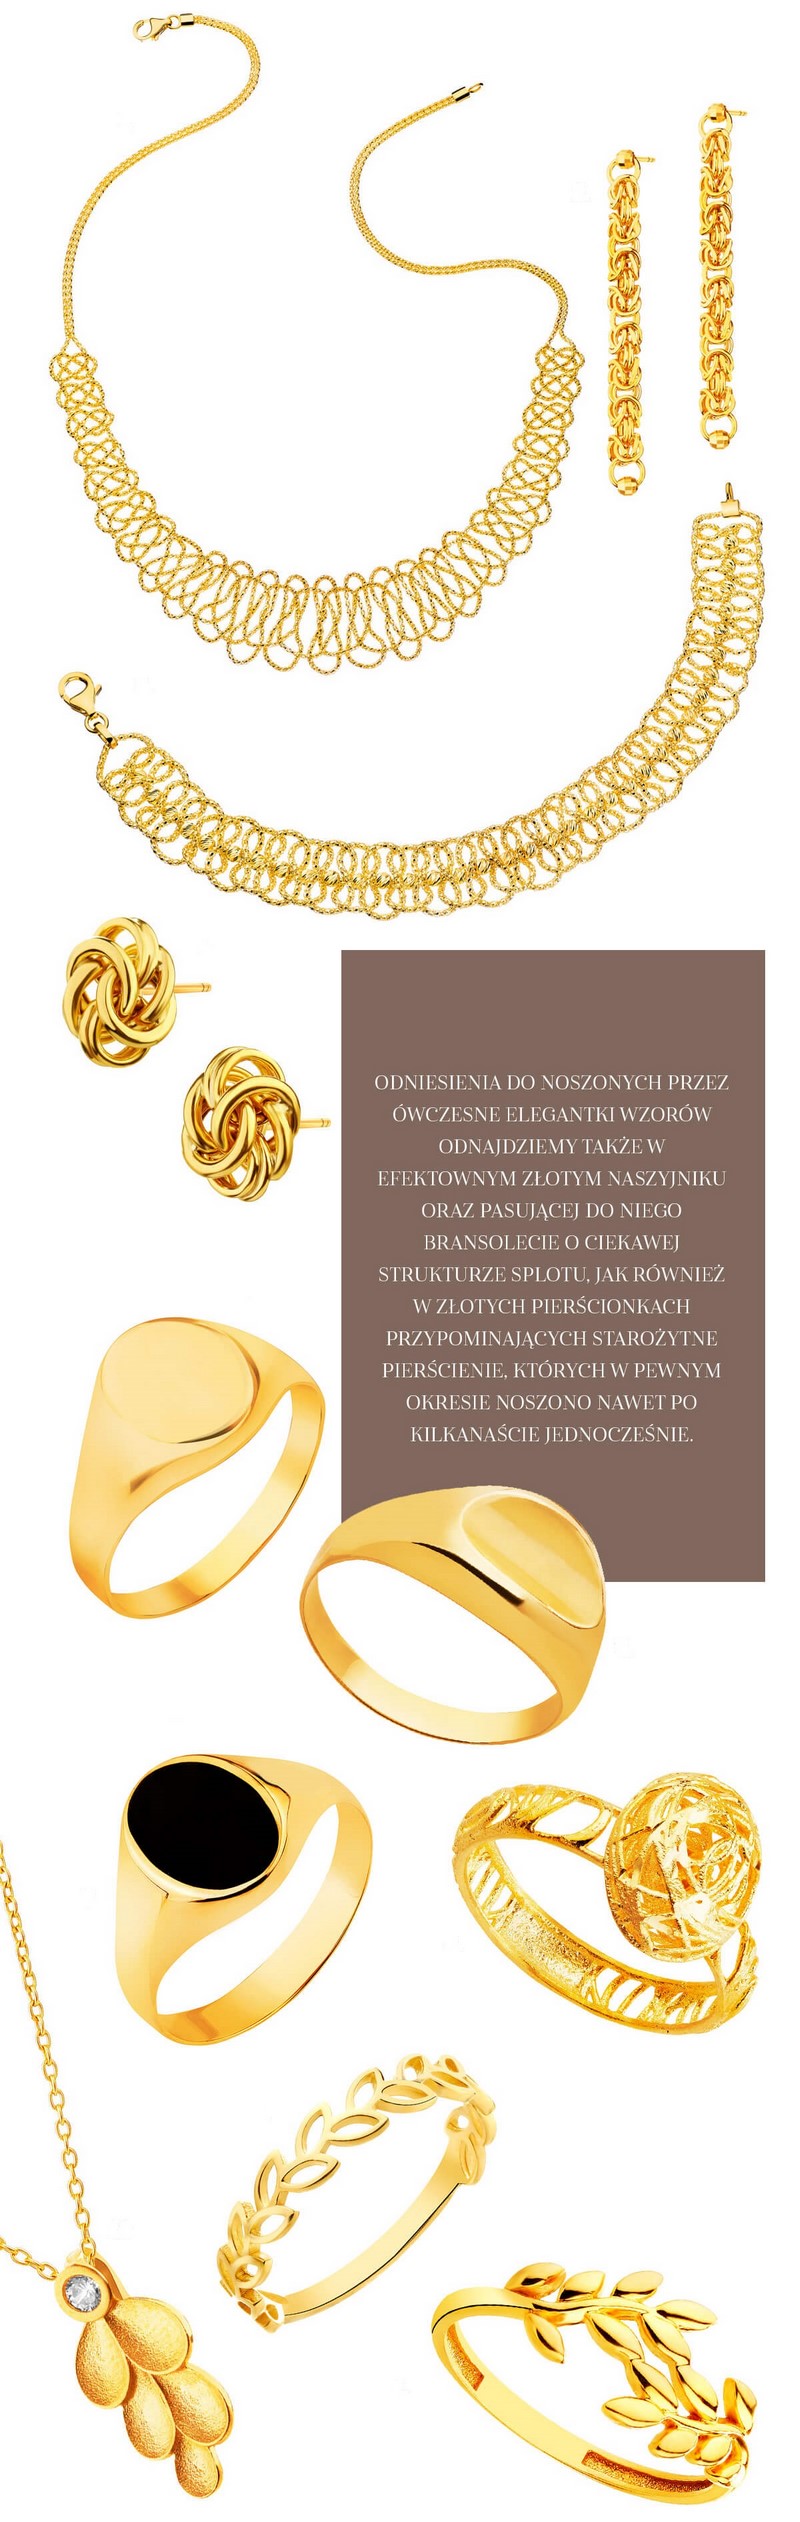 ślub wesele biżuteria damska biżuteria kobieca Apart Artelioni złoto złota biżuteria biżuteria ze złota z żółtego złota inspiracje porady trendy wiosna lato biżu abcslubu.pl